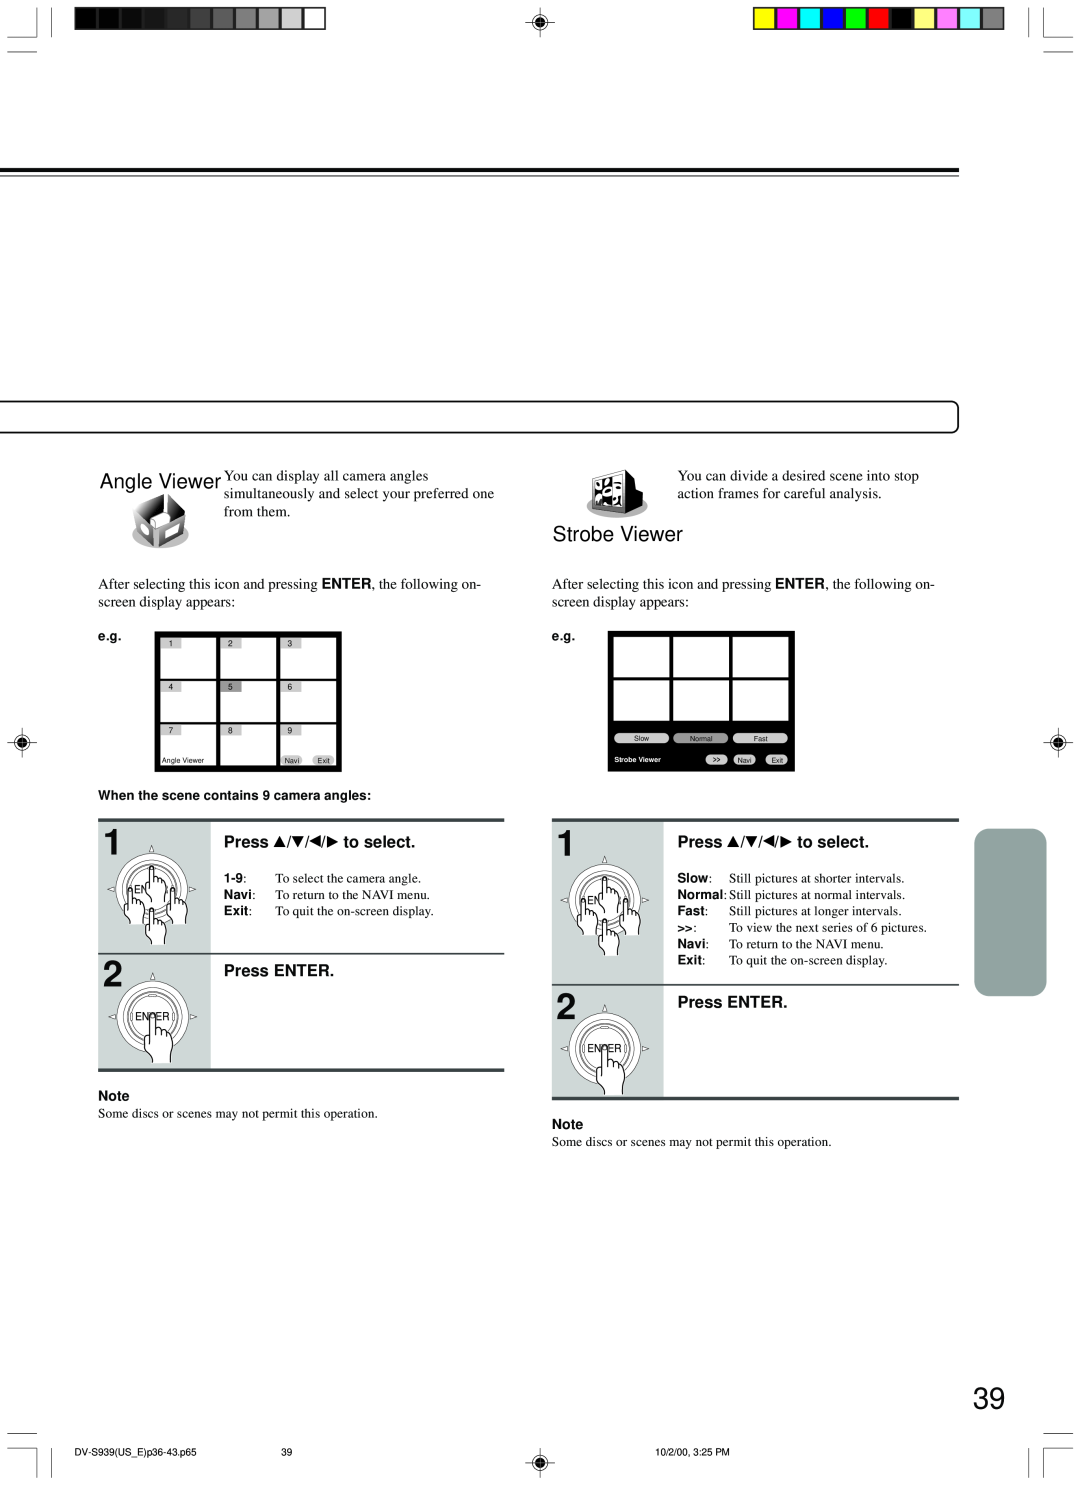 Onkyo DV-S939 instruction manual Strobe Viewer, Press / / / to select, Press ENTER 